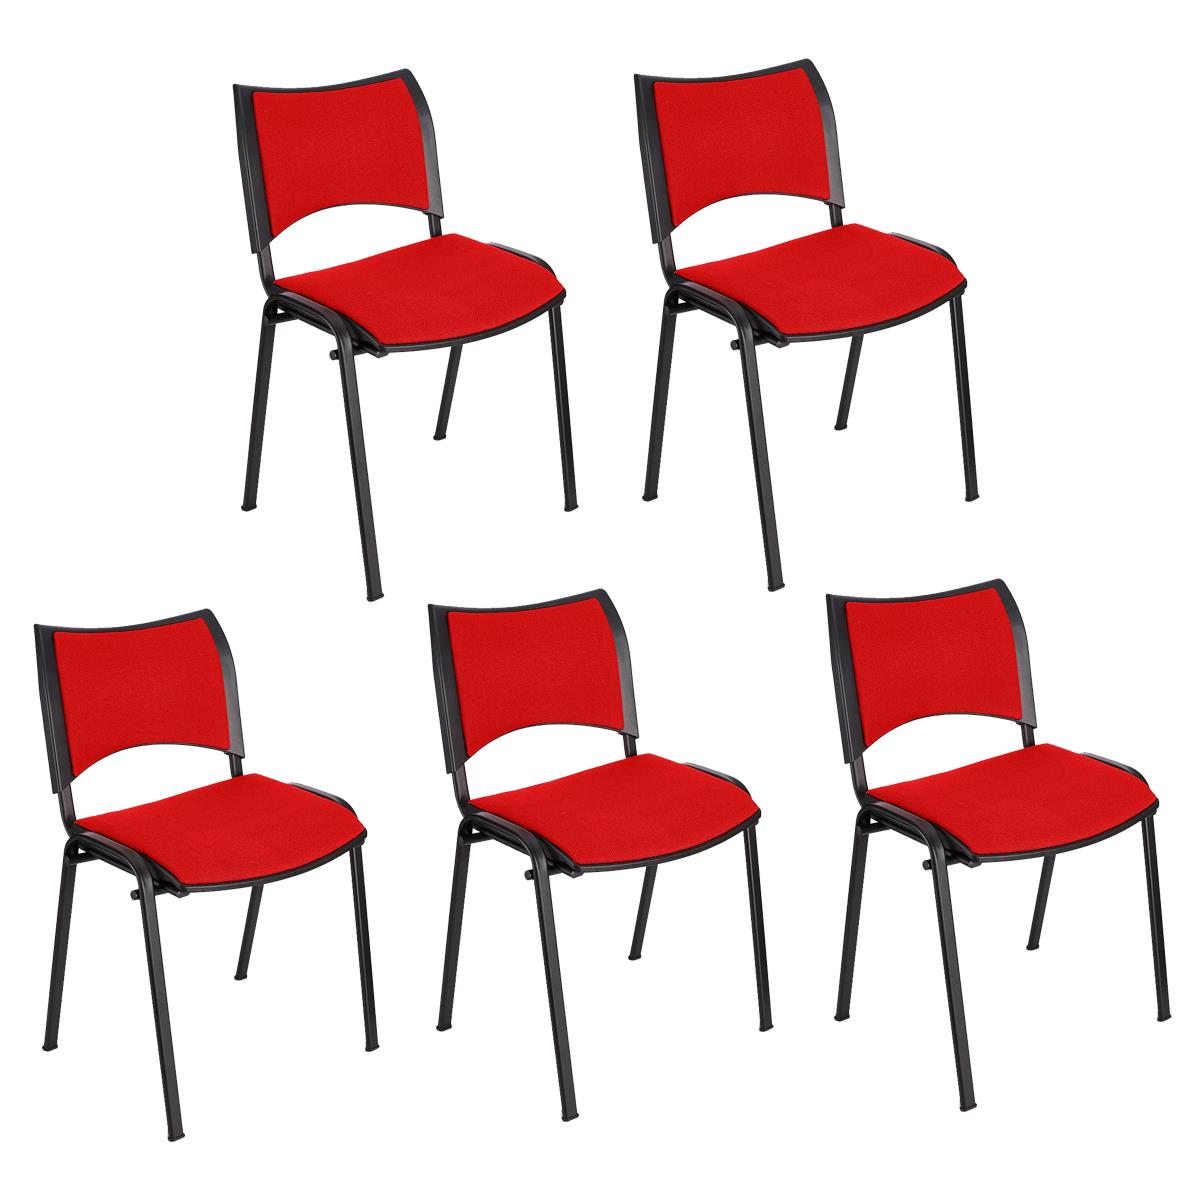 Lote 5 Cadeiras de Visita ROMEL, Prática e Empilhável, Pernas Pretas, Em Pano, Vermelho